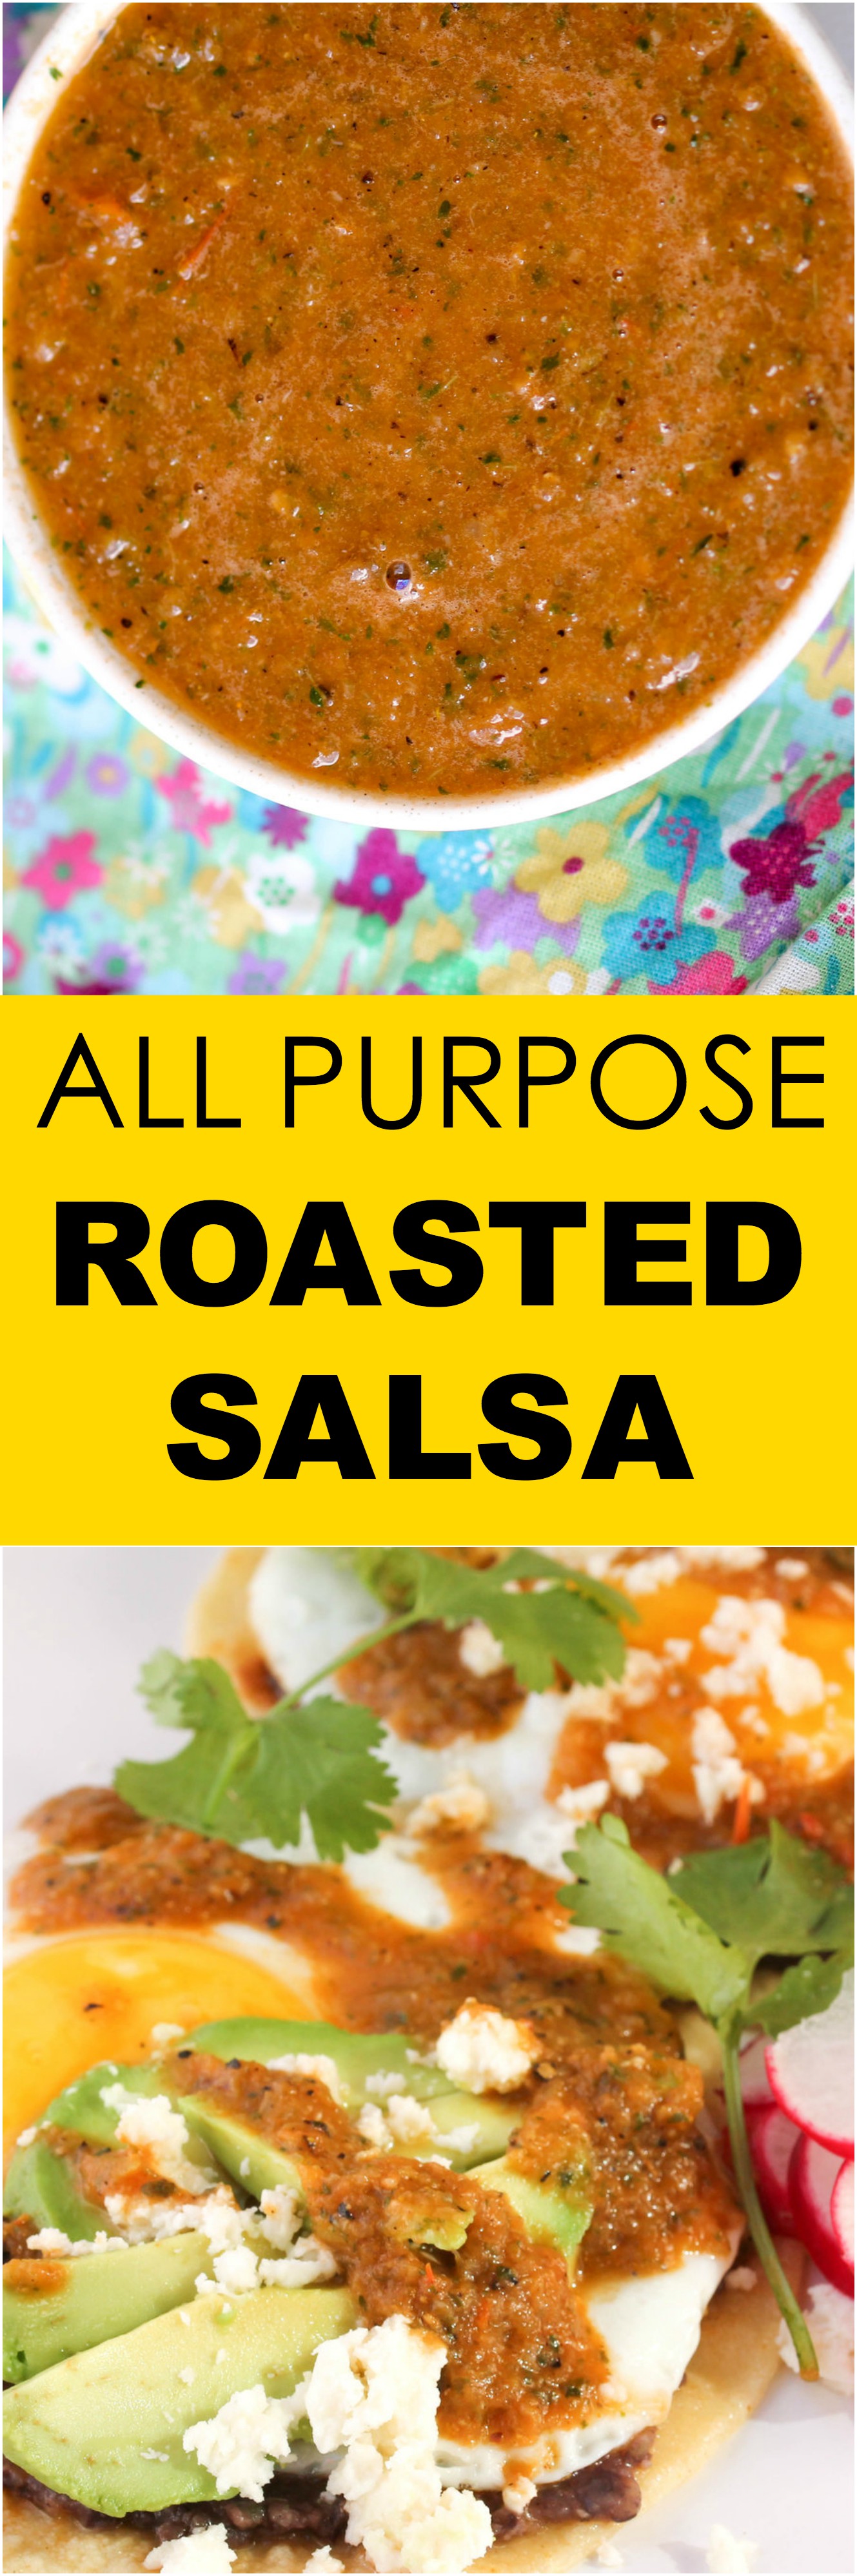 all purpose roasted salsa.jpg